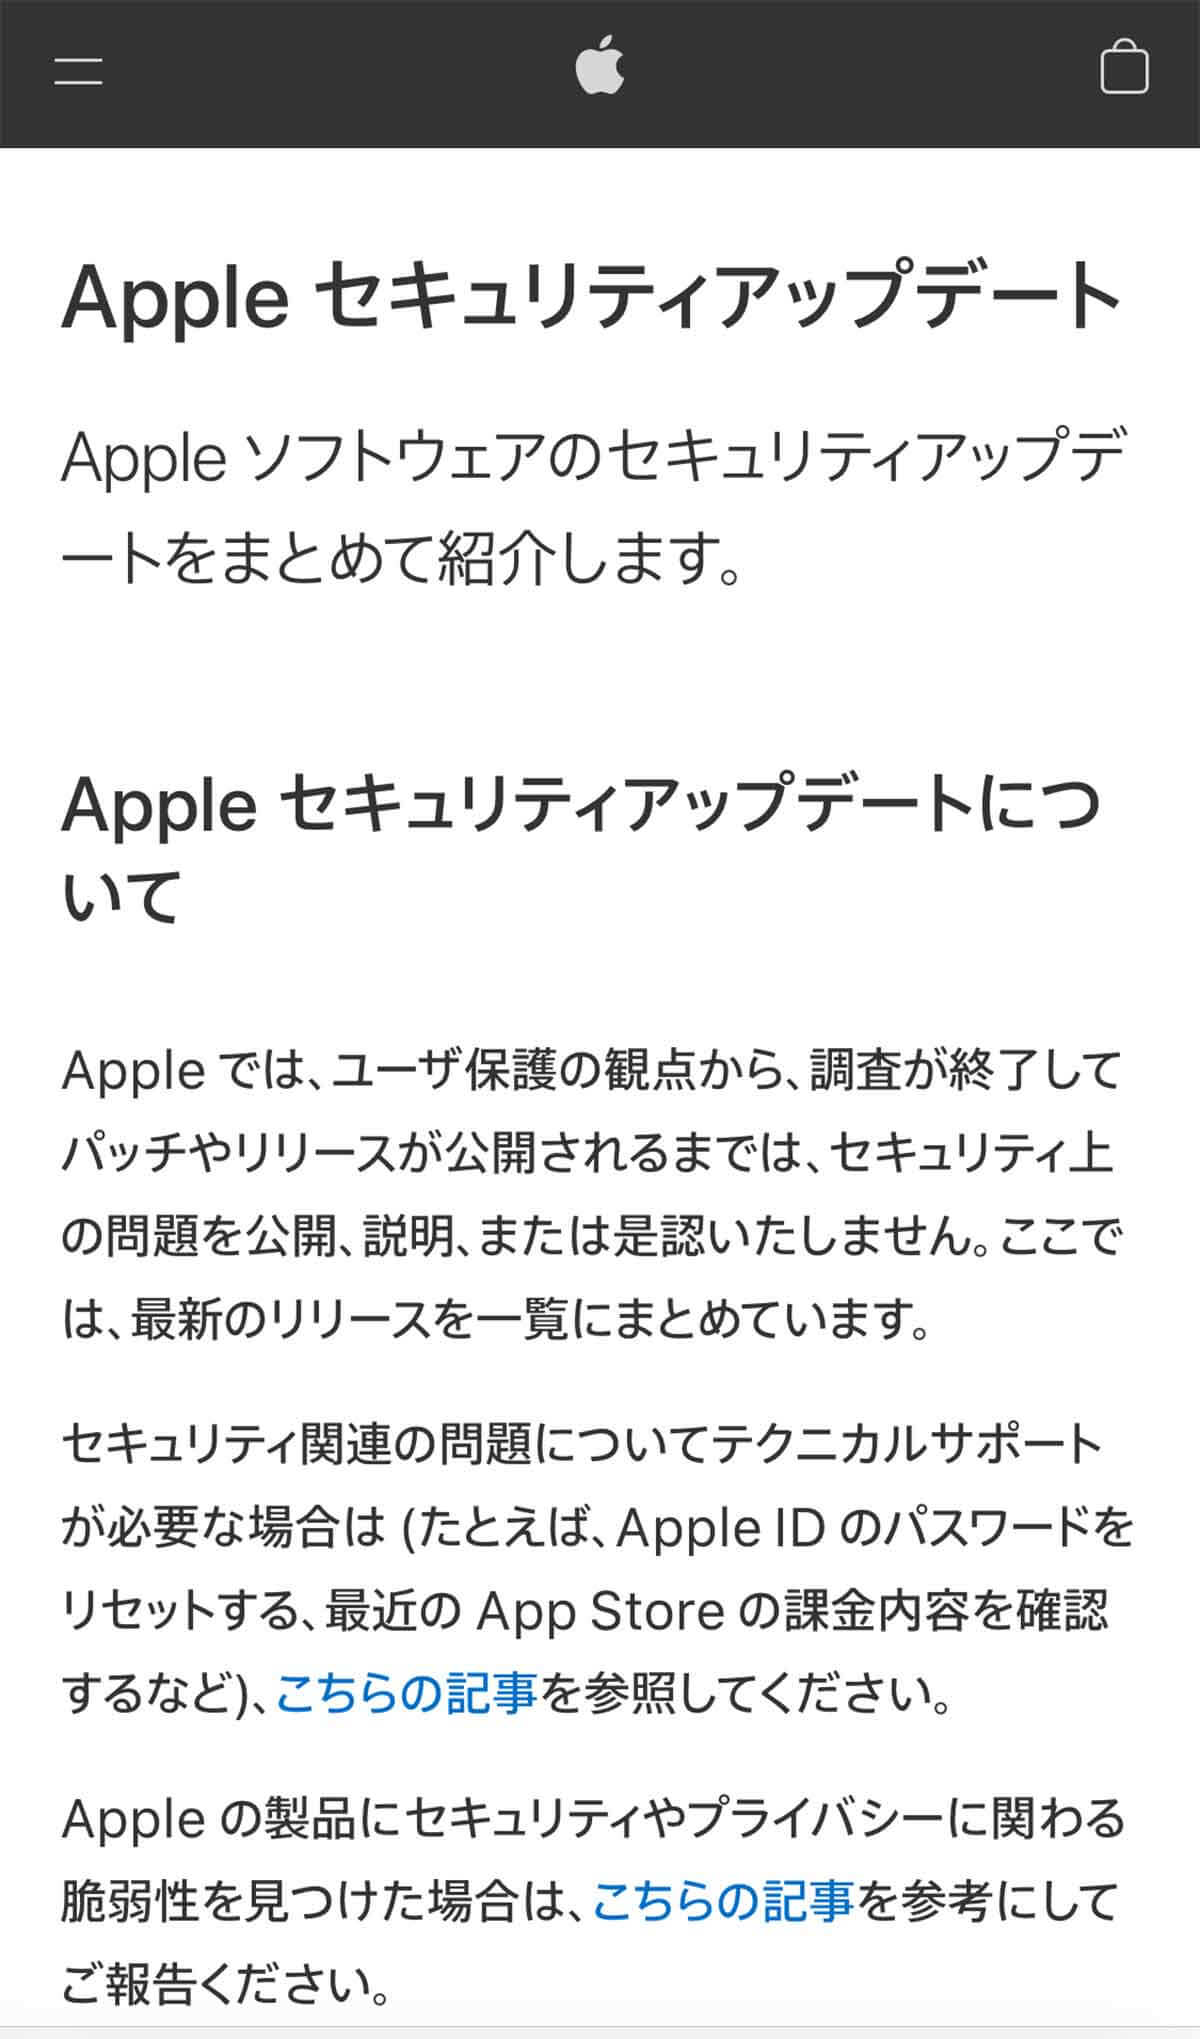 Apple公式のセキュリティアップデートページでは、12月1日現在